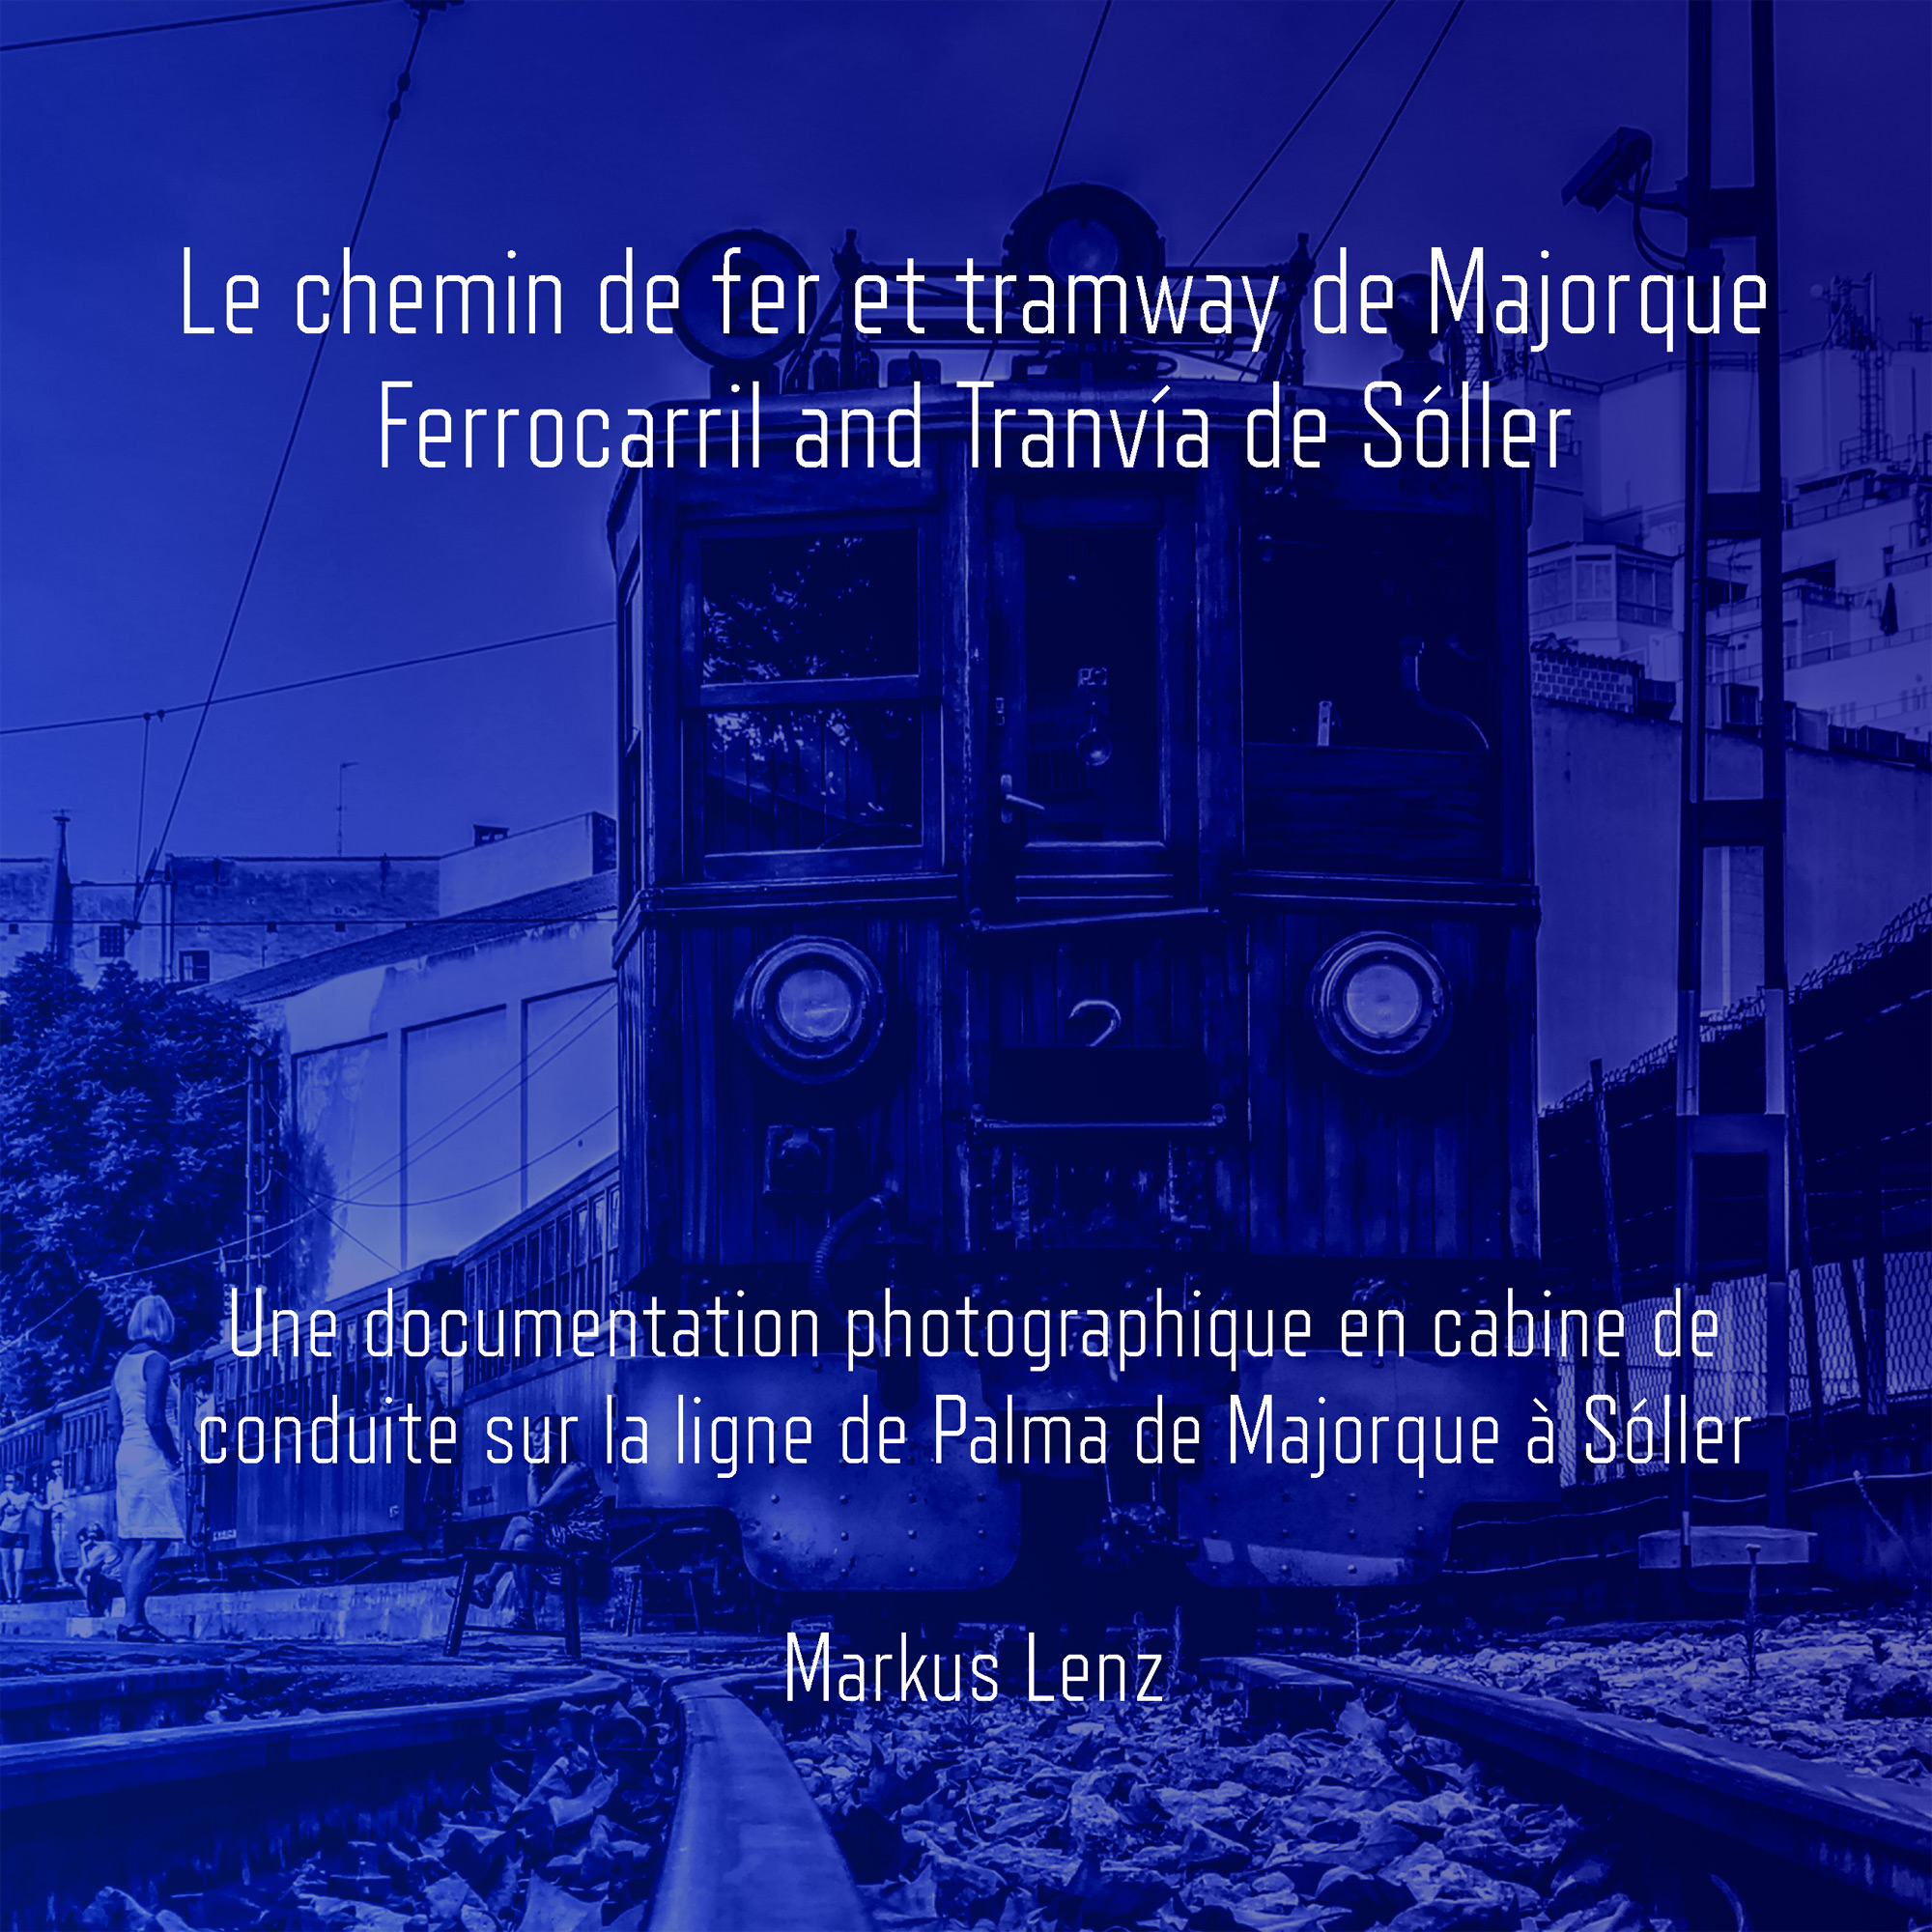 Le chemin de fer et tramway de Majorque: Ferrocarril et Tranvía de Sóller: Une documentation photographique en cabine de conduite sur la ligne de Palma de Majorque à Sóller